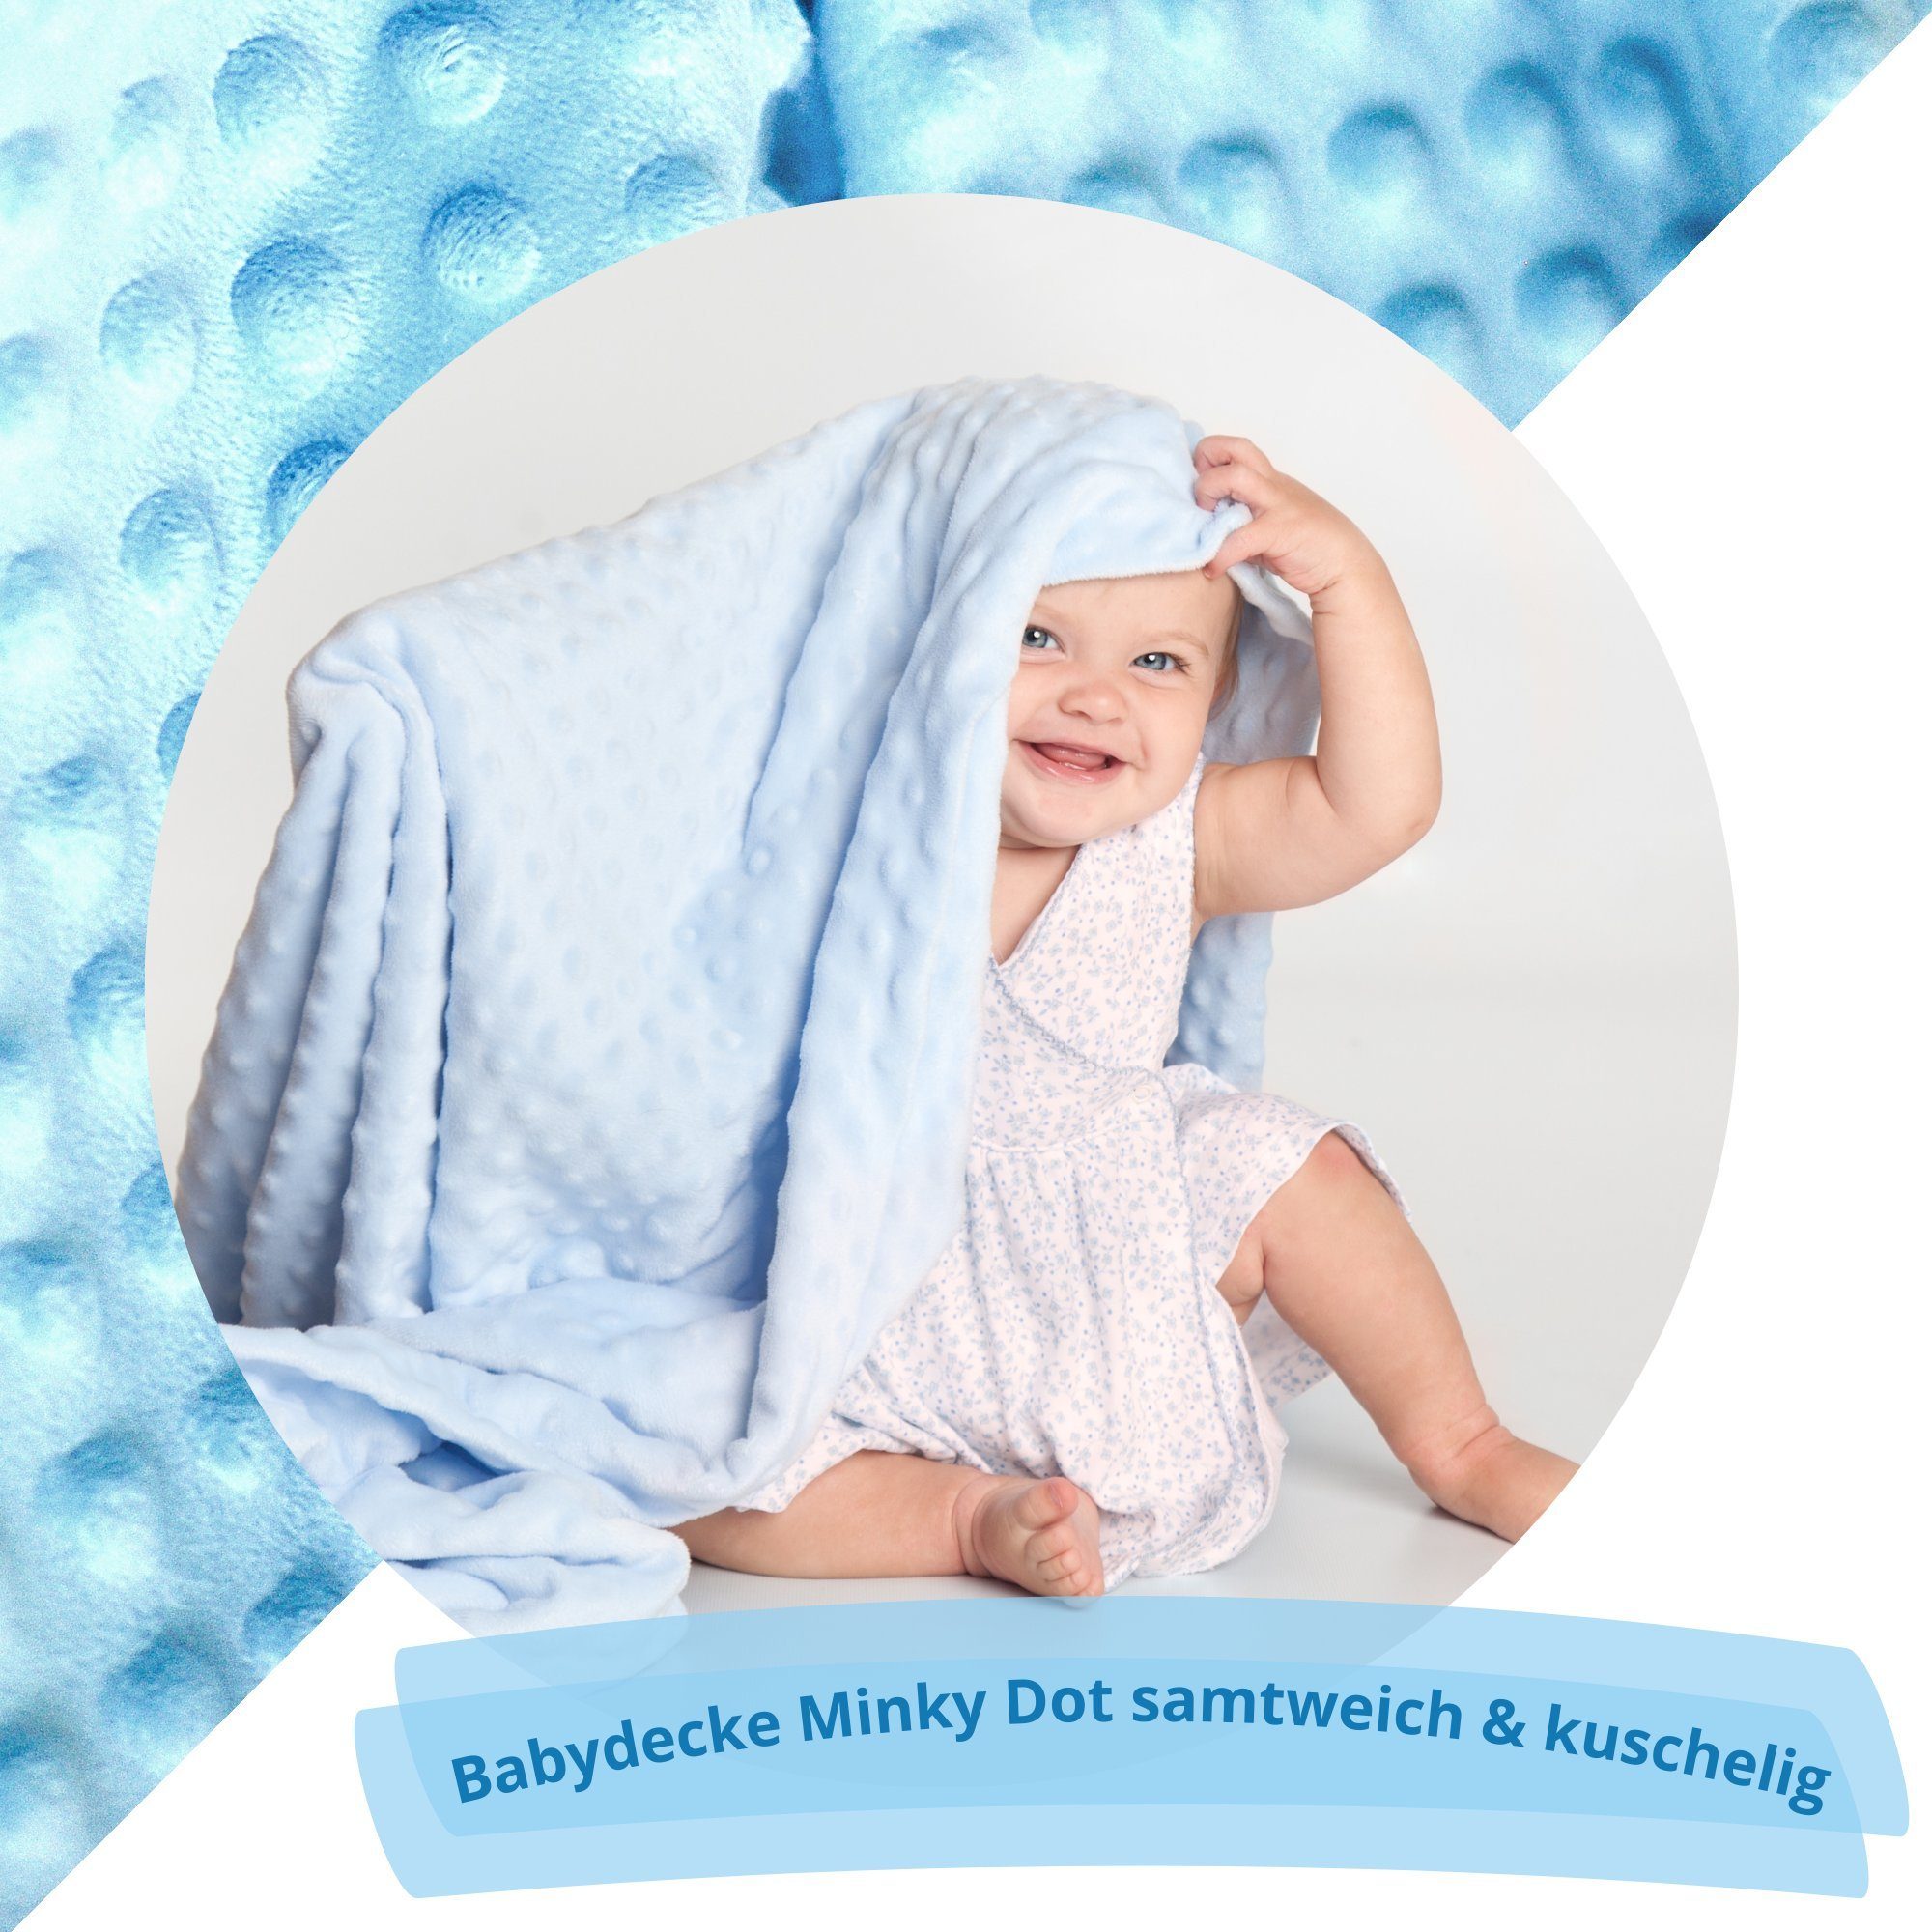 Babydecke Angel's Geburt Babydecke blau Schmusehase, zur Geschenk mit Baby Große Taufe,